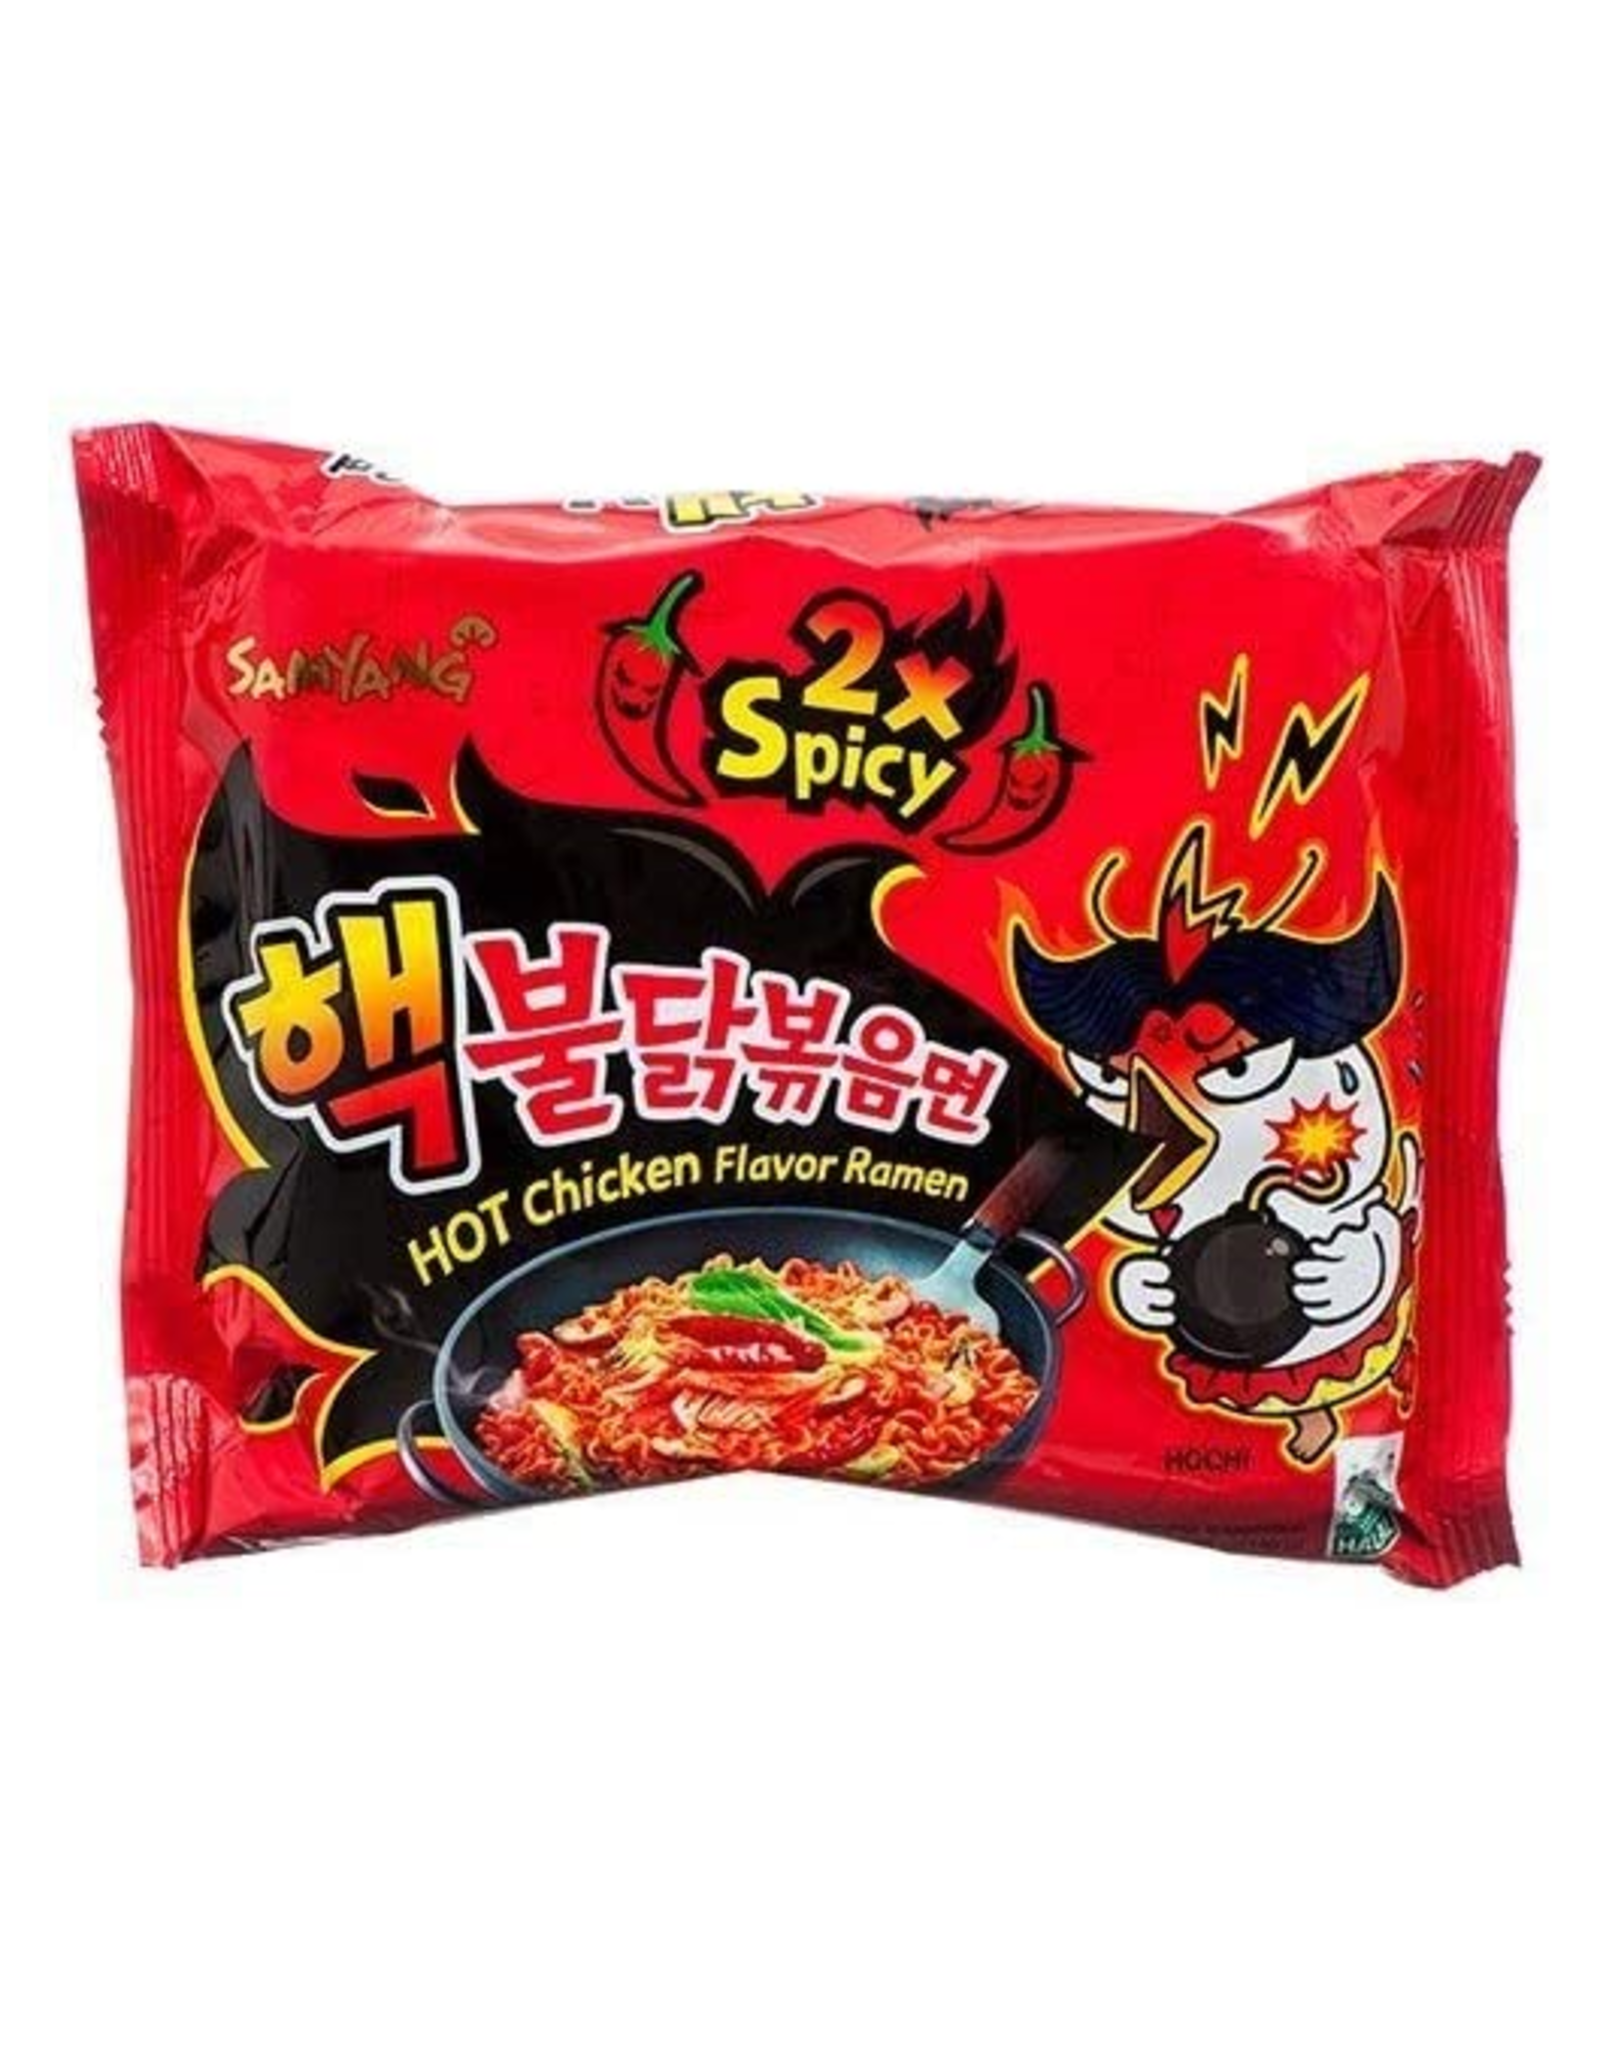 Samyang Hot Chicken Flavor Ramen 2x Spicy